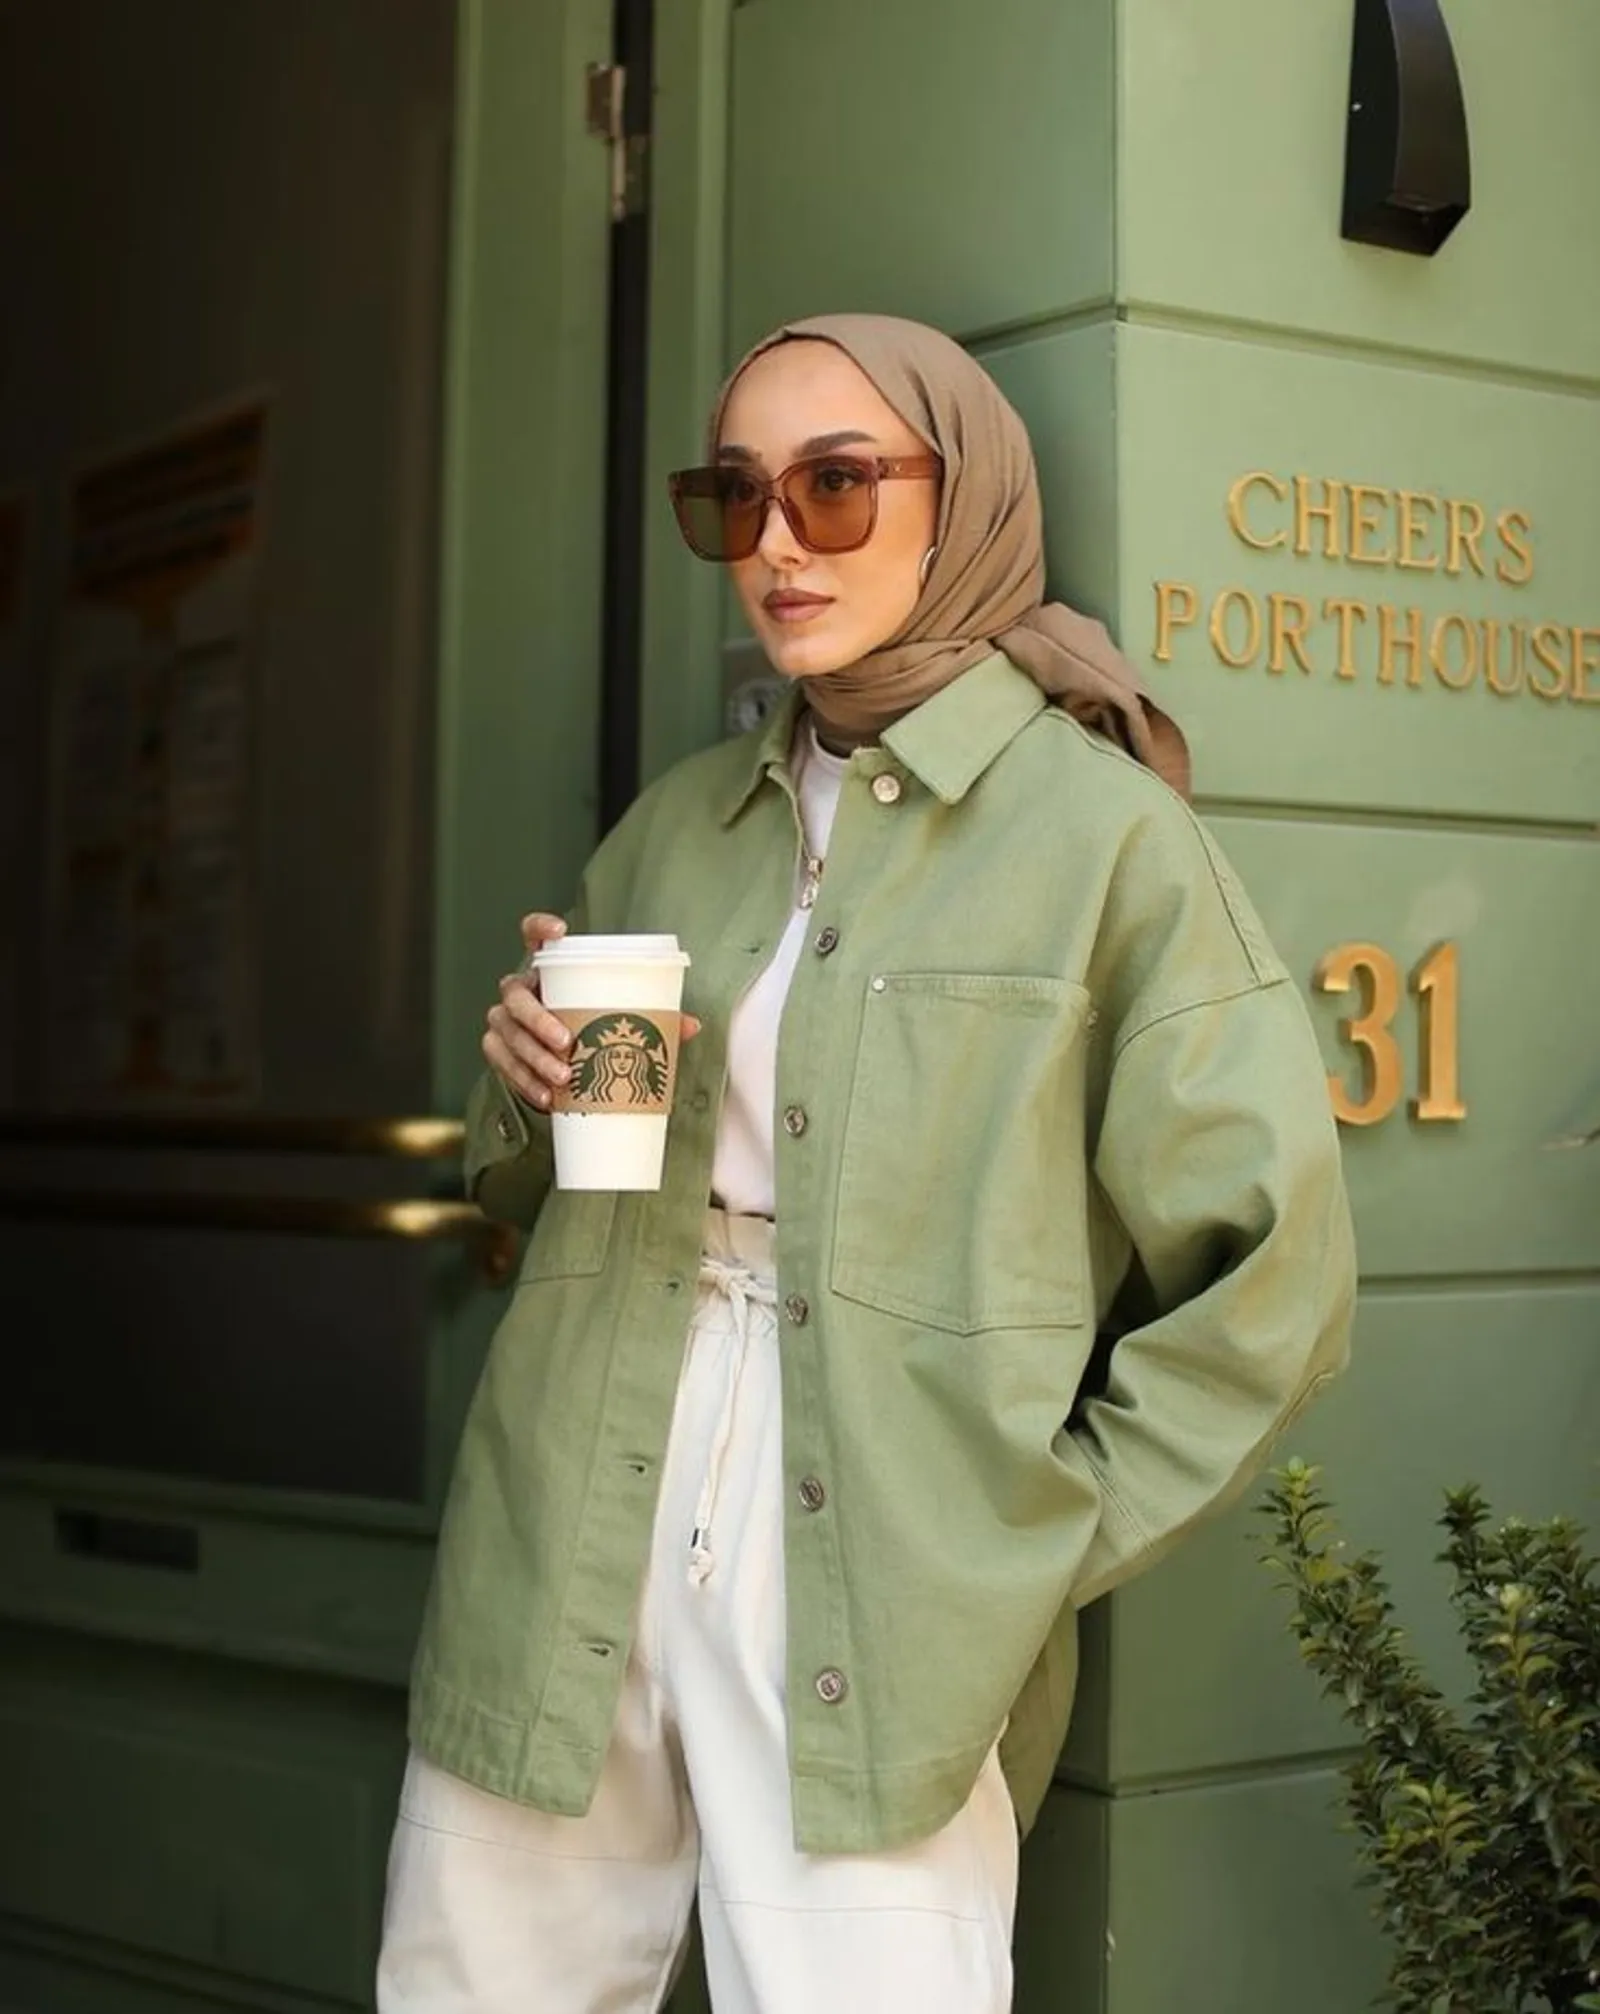 Baju Warna Sage Green Cocok dengan Jilbab Warna Apa? Ini Pilihannya